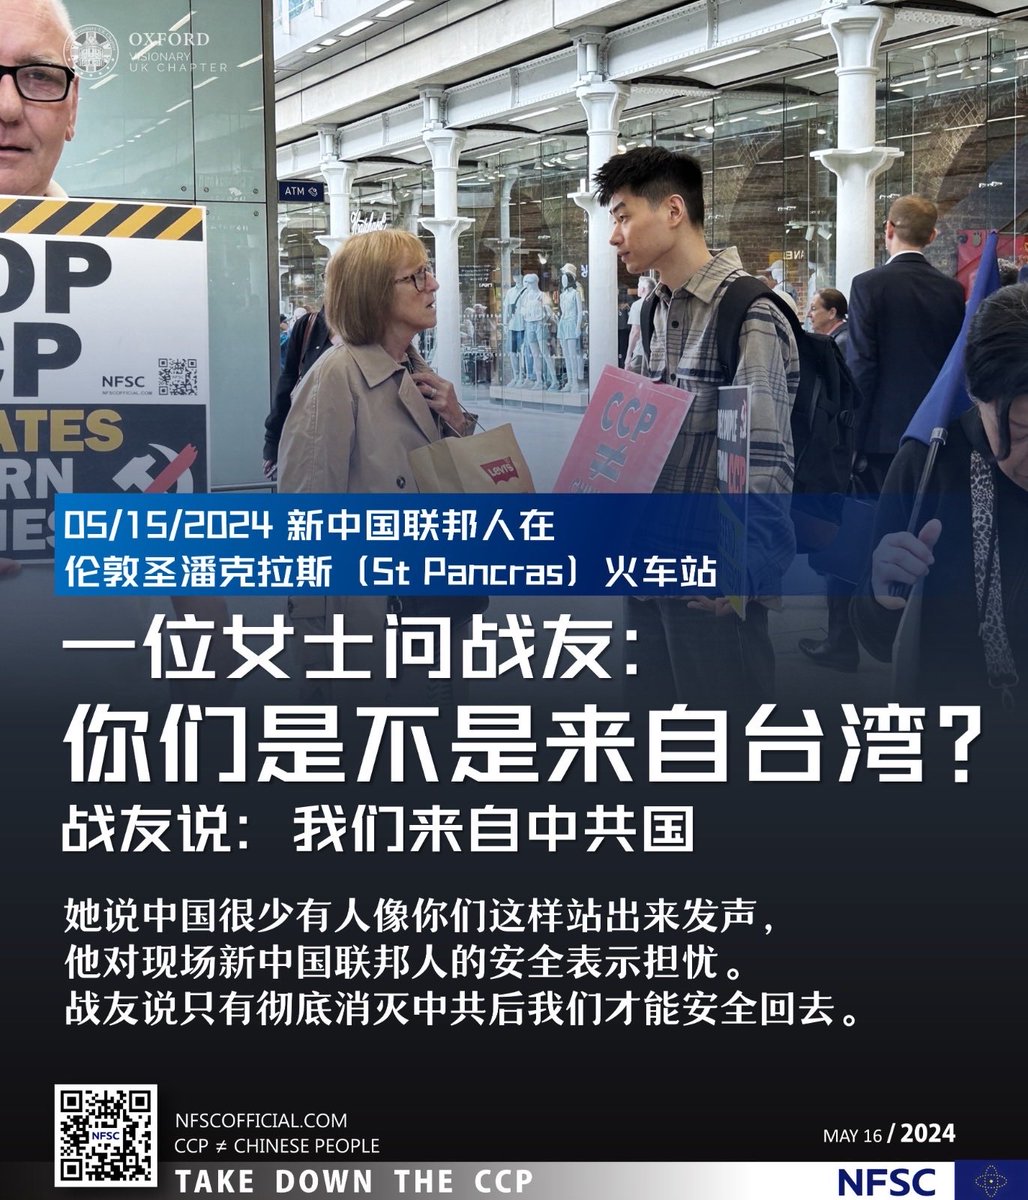 #新中國聯邦人 在 #StPancras 火車站

5月15日，一位女士來問戰友 ：你們來自台灣嗎？

戰友說：我來自中共國

女士認為中國很少有人像你們這樣站出來發聲，她對現場的新中國聯邦人的安全表示擔憂 ！

戰友說只有徹底消滅中共後我們才能安全回國 

#TakeDownTheCCP